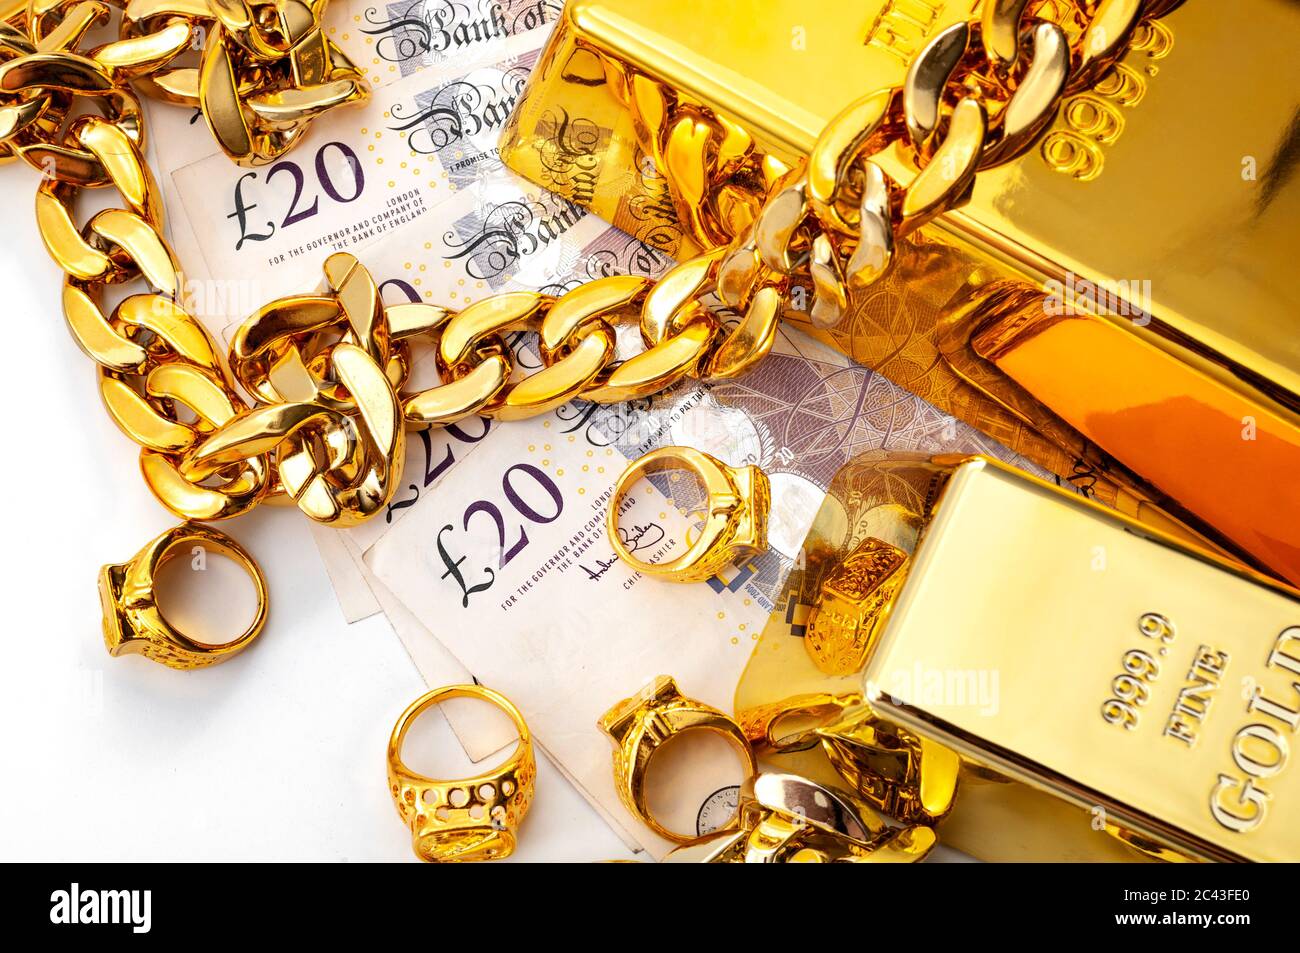 Acheteur de bijoux, de la boutique de prêt-à-porter et acheter et vendre des métaux précieux thème concept avec pile de l'argent en livres britanniques, anneaux dorés, collier bracelet et or Banque D'Images